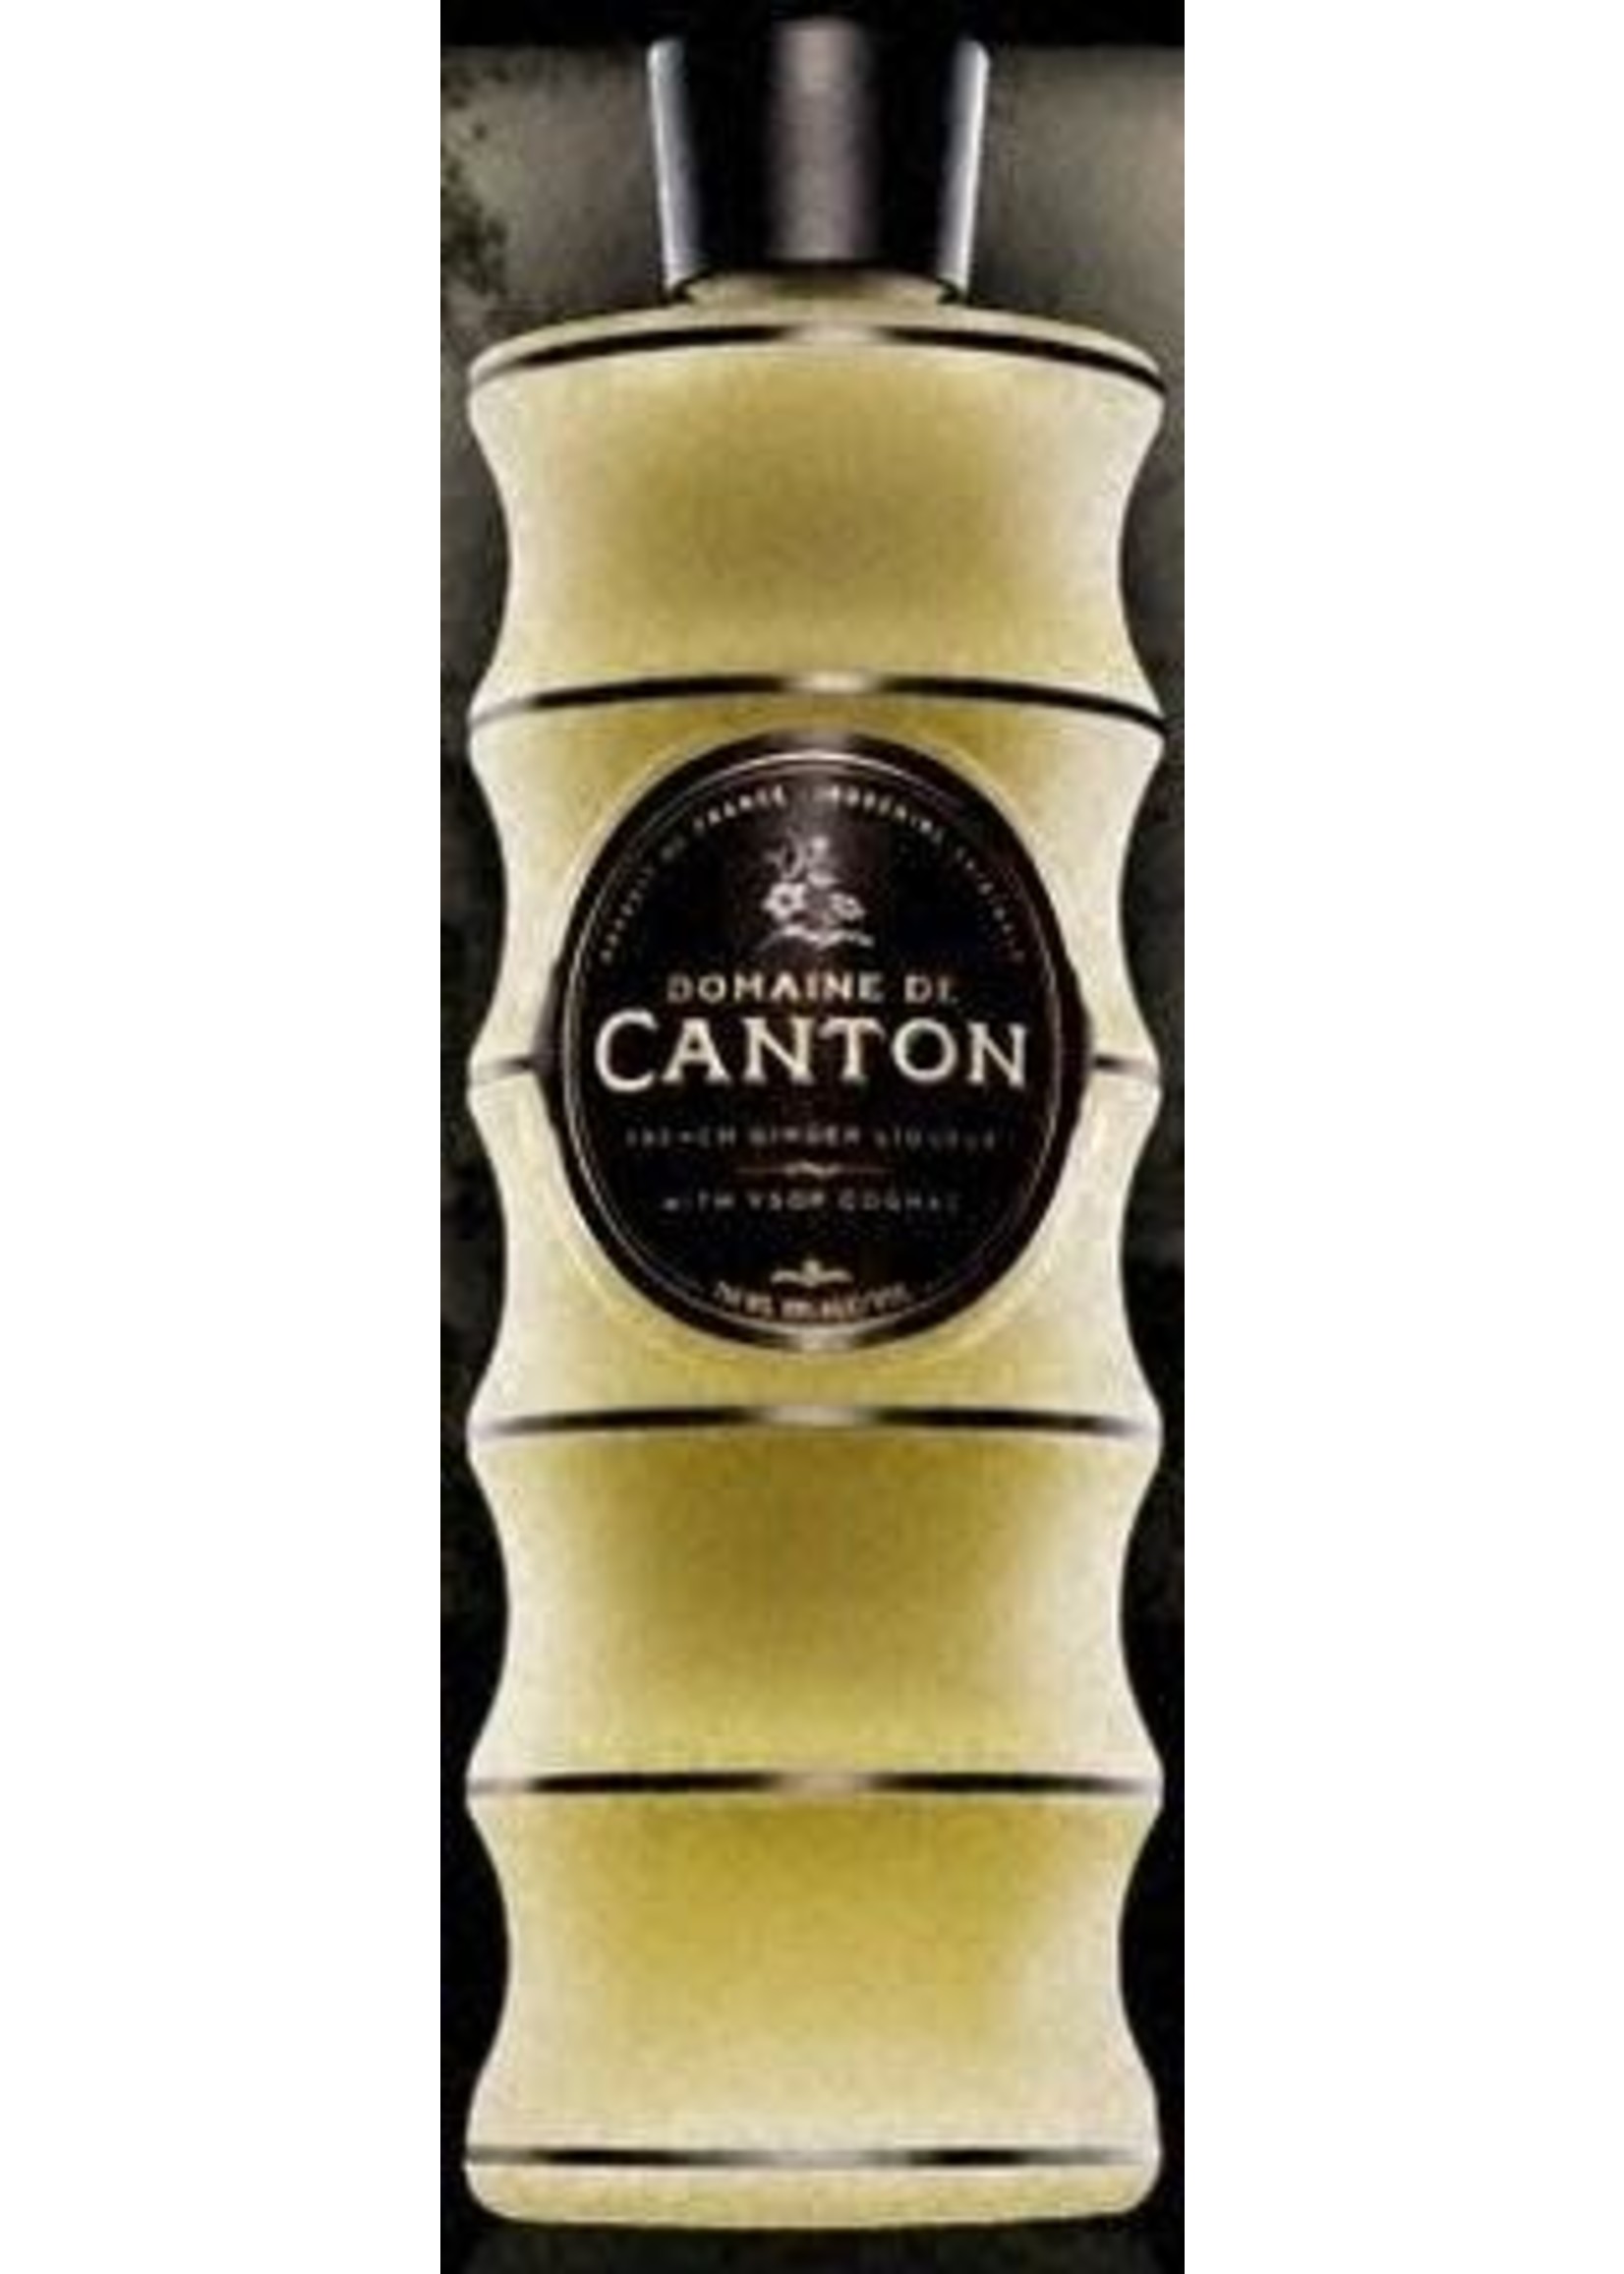 Domaine de Canton Domaine de Canton / Ginger Liqueur